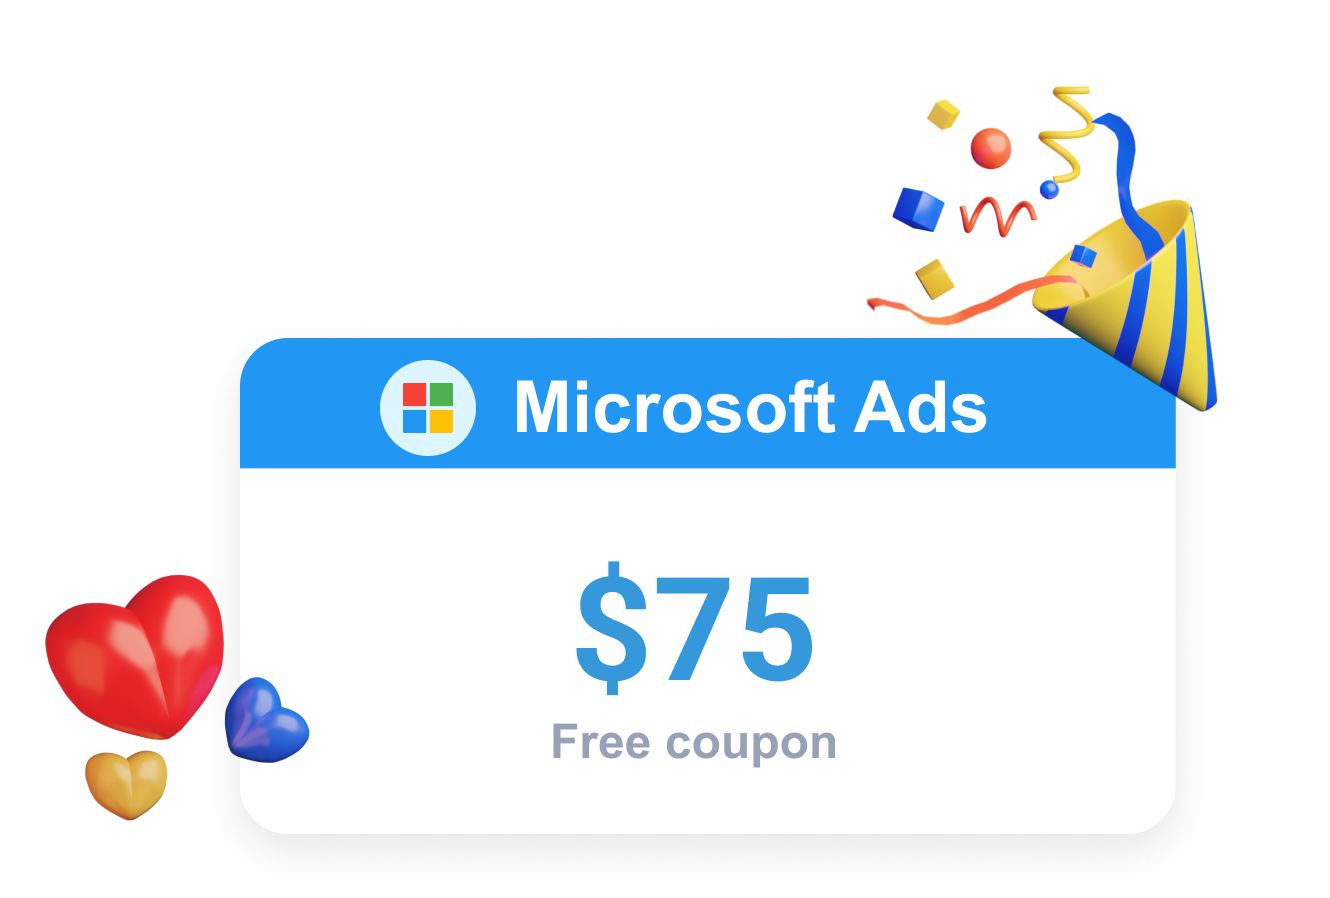 Clever Ads oferece uma promoção da Microsoft Ads sob a forma de um cupão Bing Ads gratuito